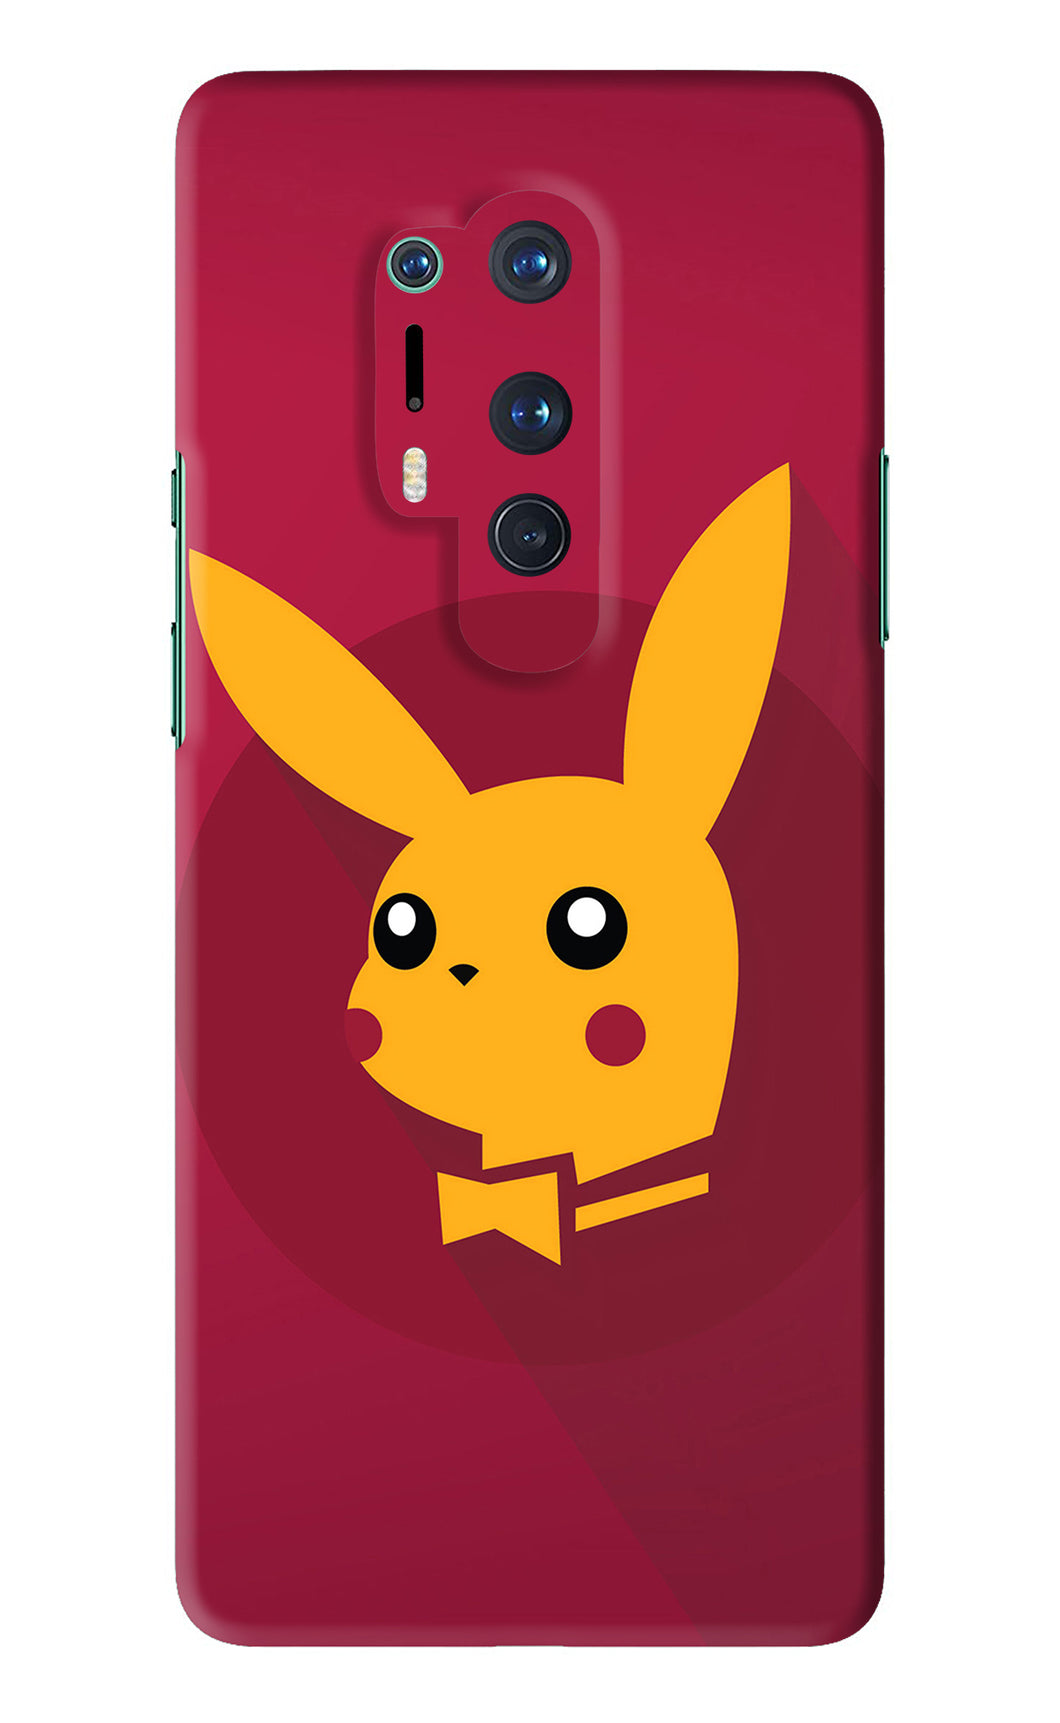 Pikachu OnePlus 8 Pro Back Skin Wrap